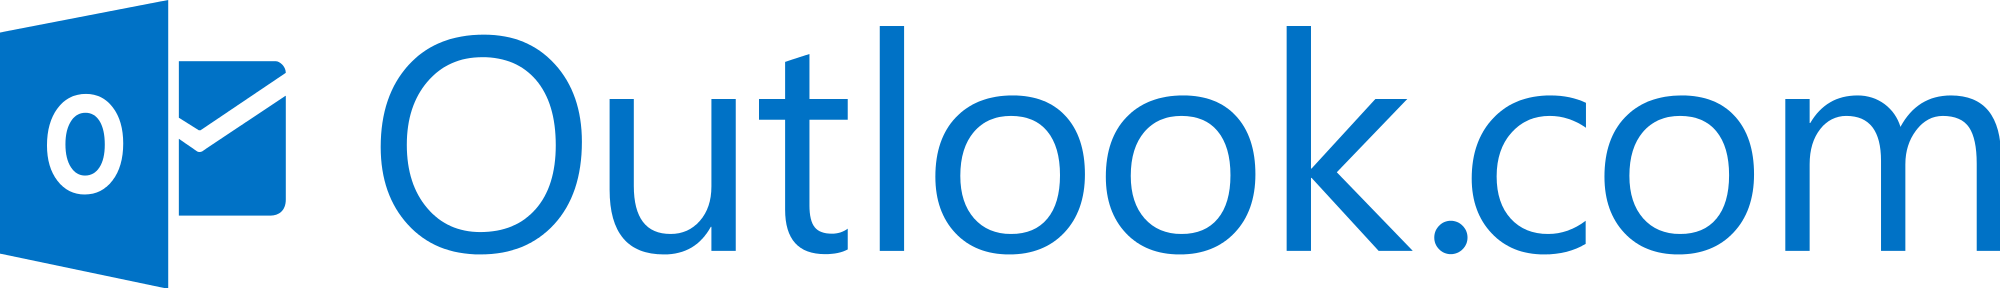 Outlook Transparent Logo - Outlook.com logo and wordmark.svg